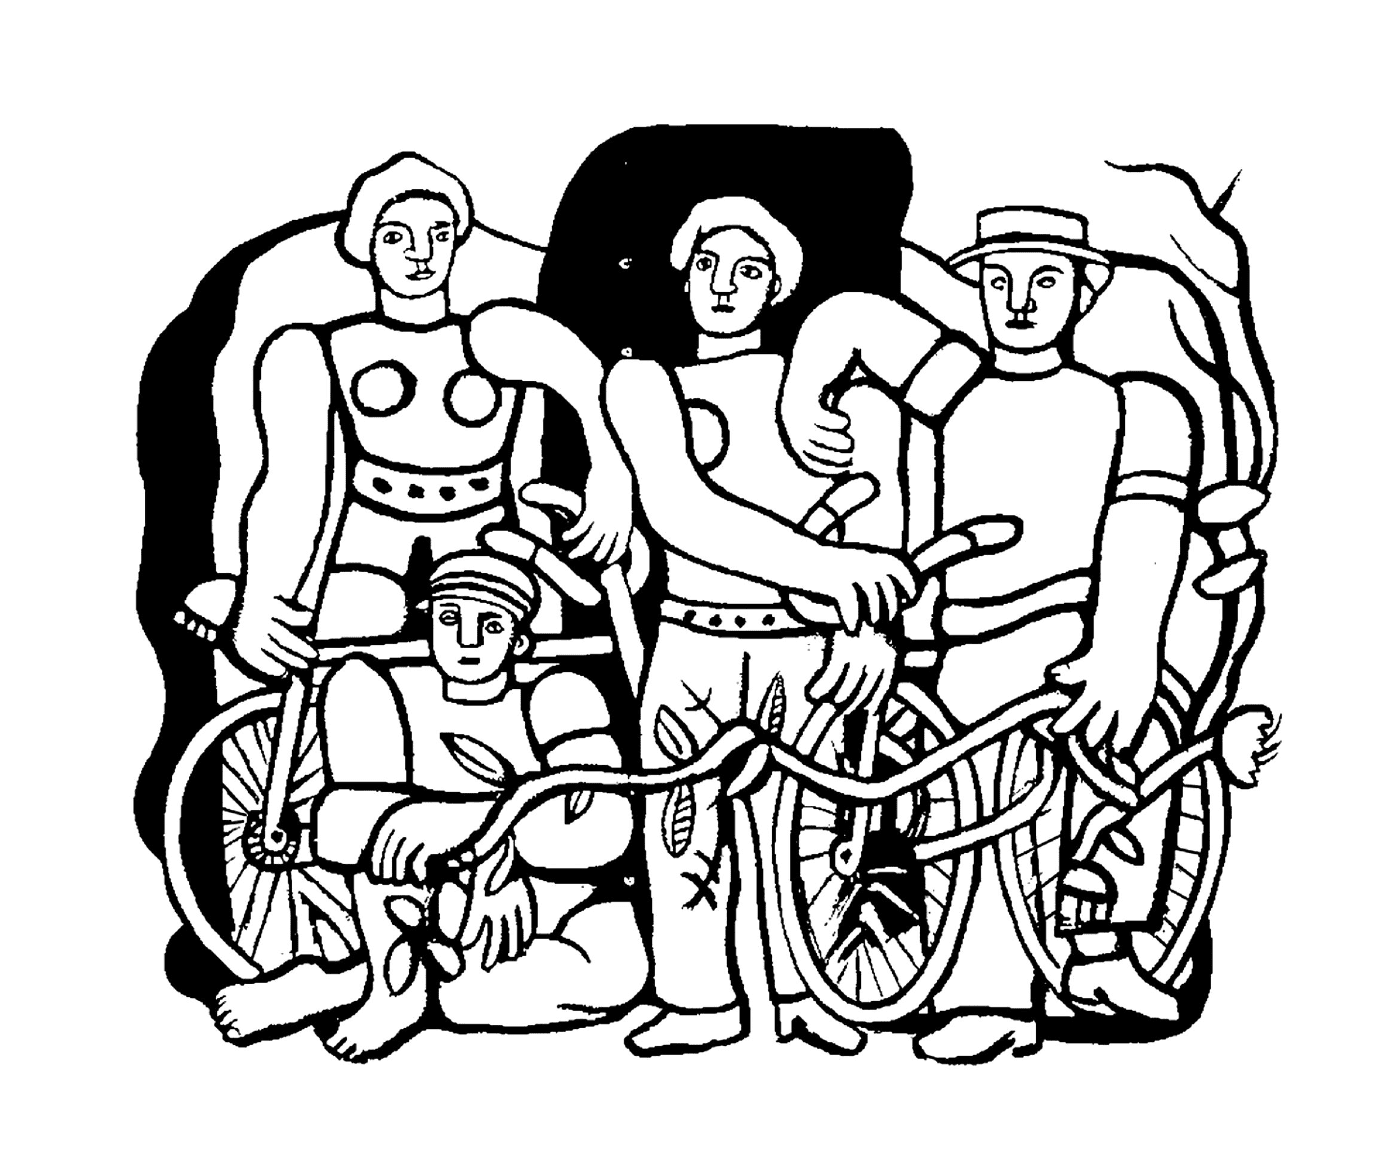  साइकिलों से लोगों का एक समूह 